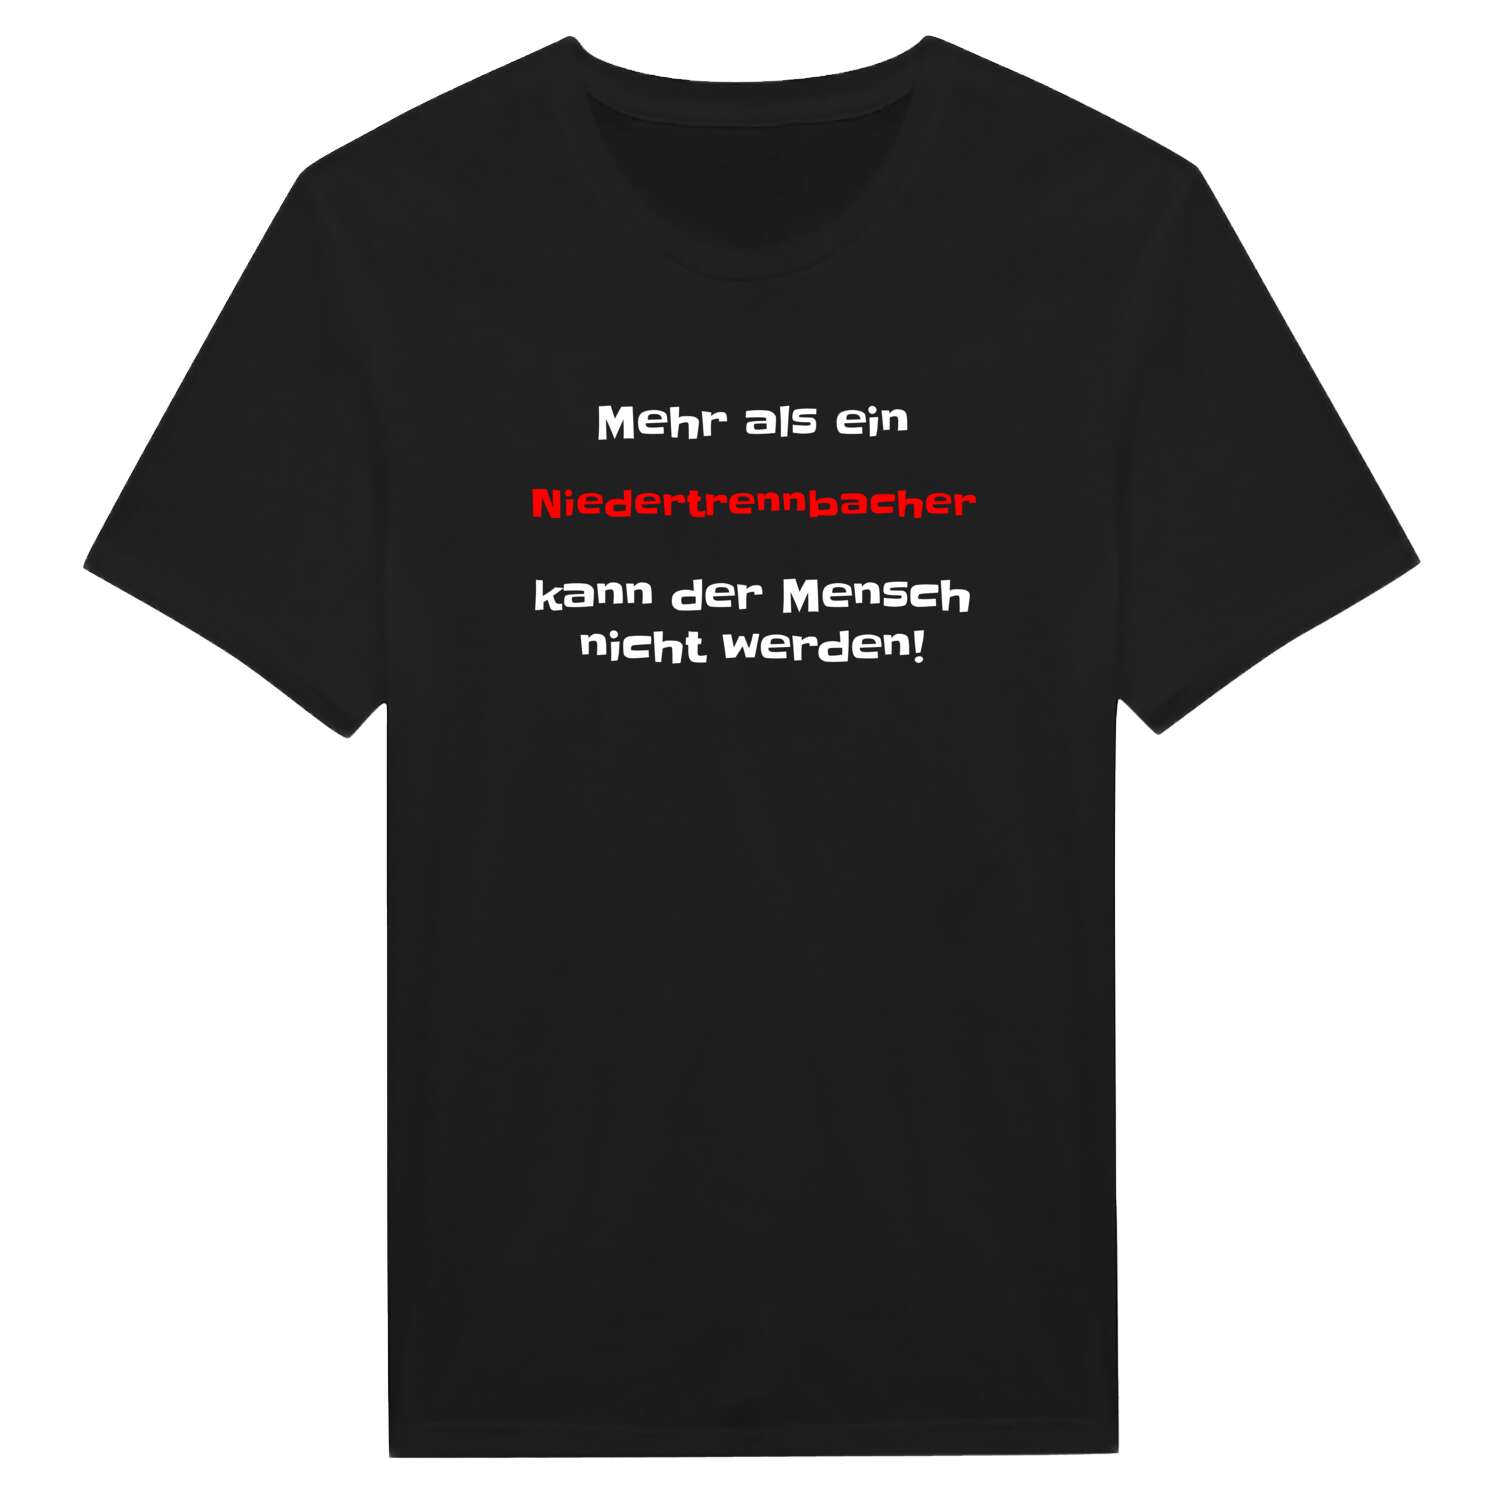 Niedertrennbach T-Shirt »Mehr als ein«